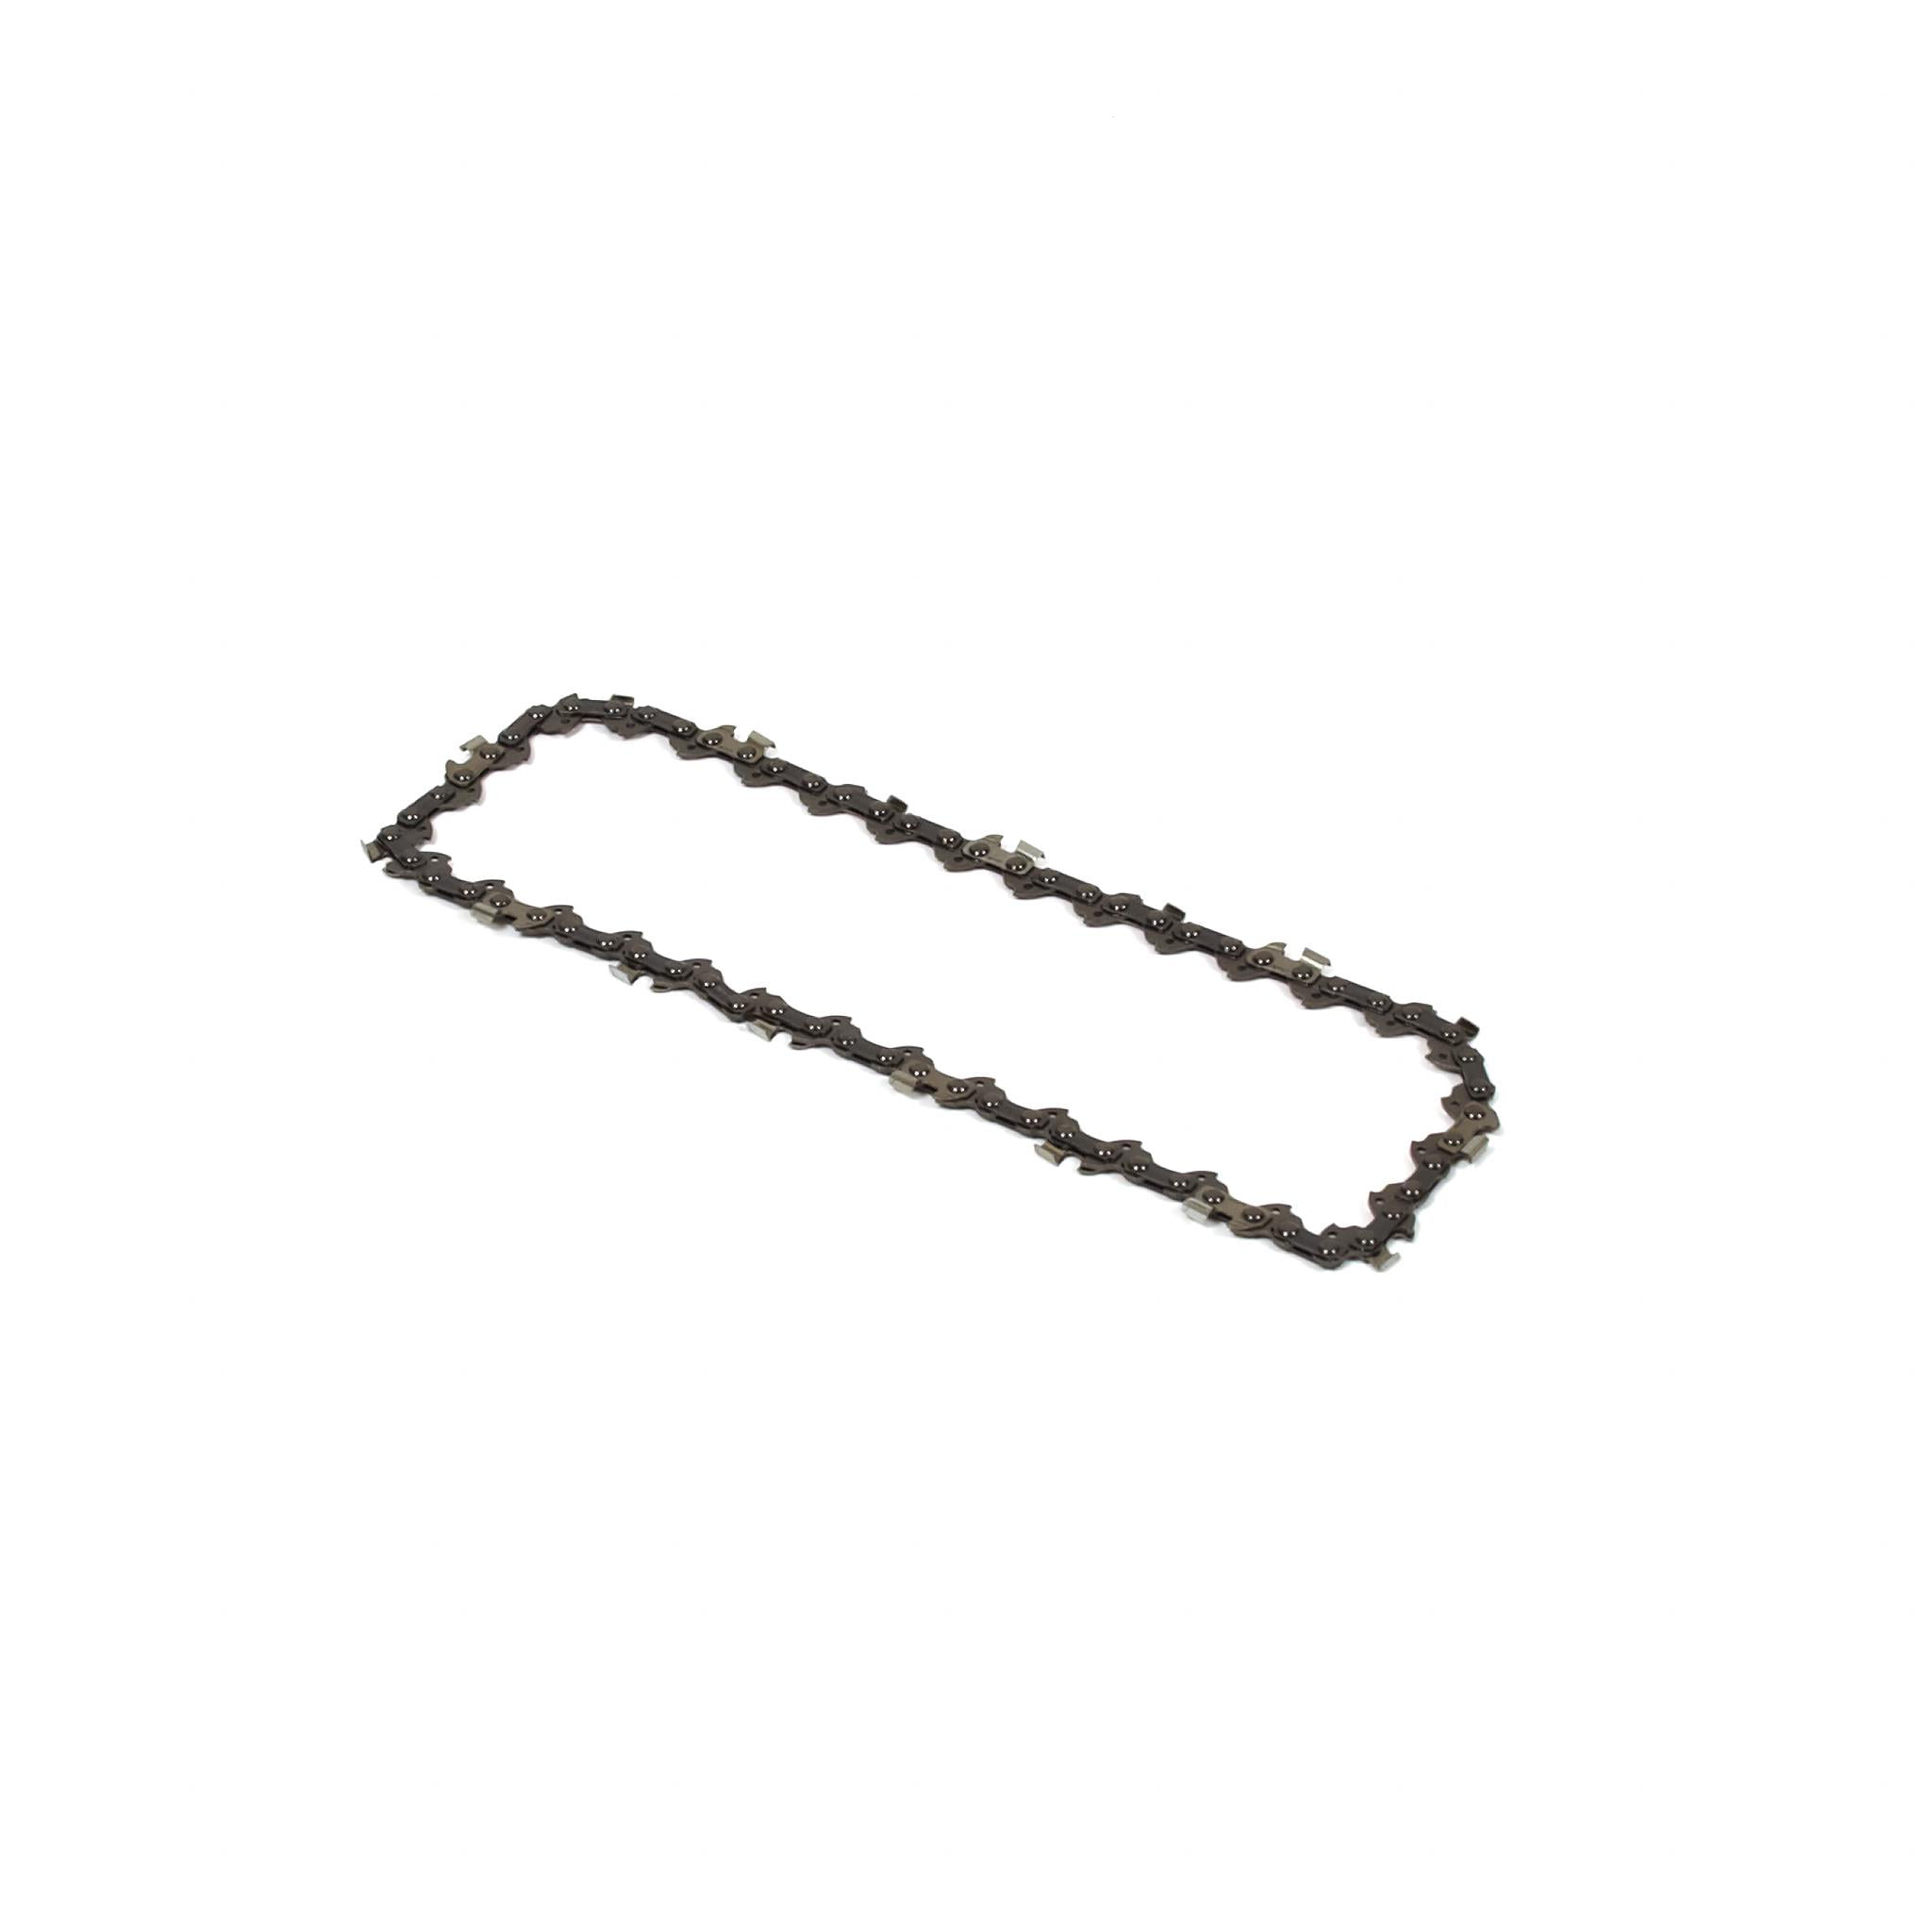 Oregon 8-Inch Micro Lite Chain Saw Chain Fits Poulan Remington R34 